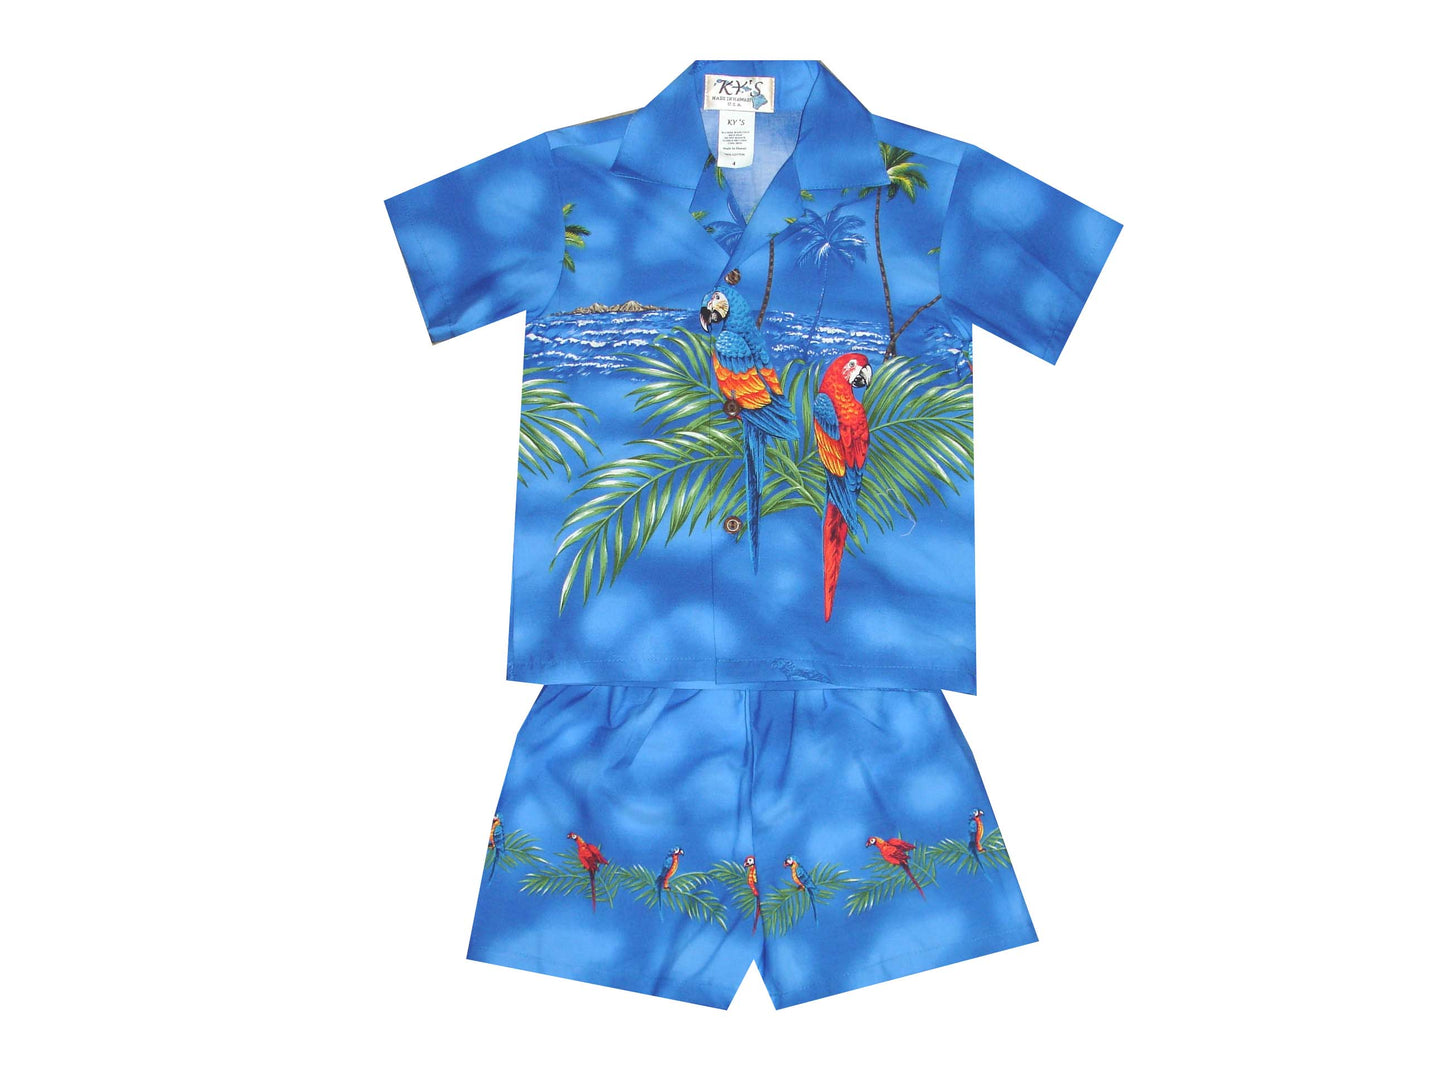 Parrot Island Hawaiian Boy Shirt -Navy